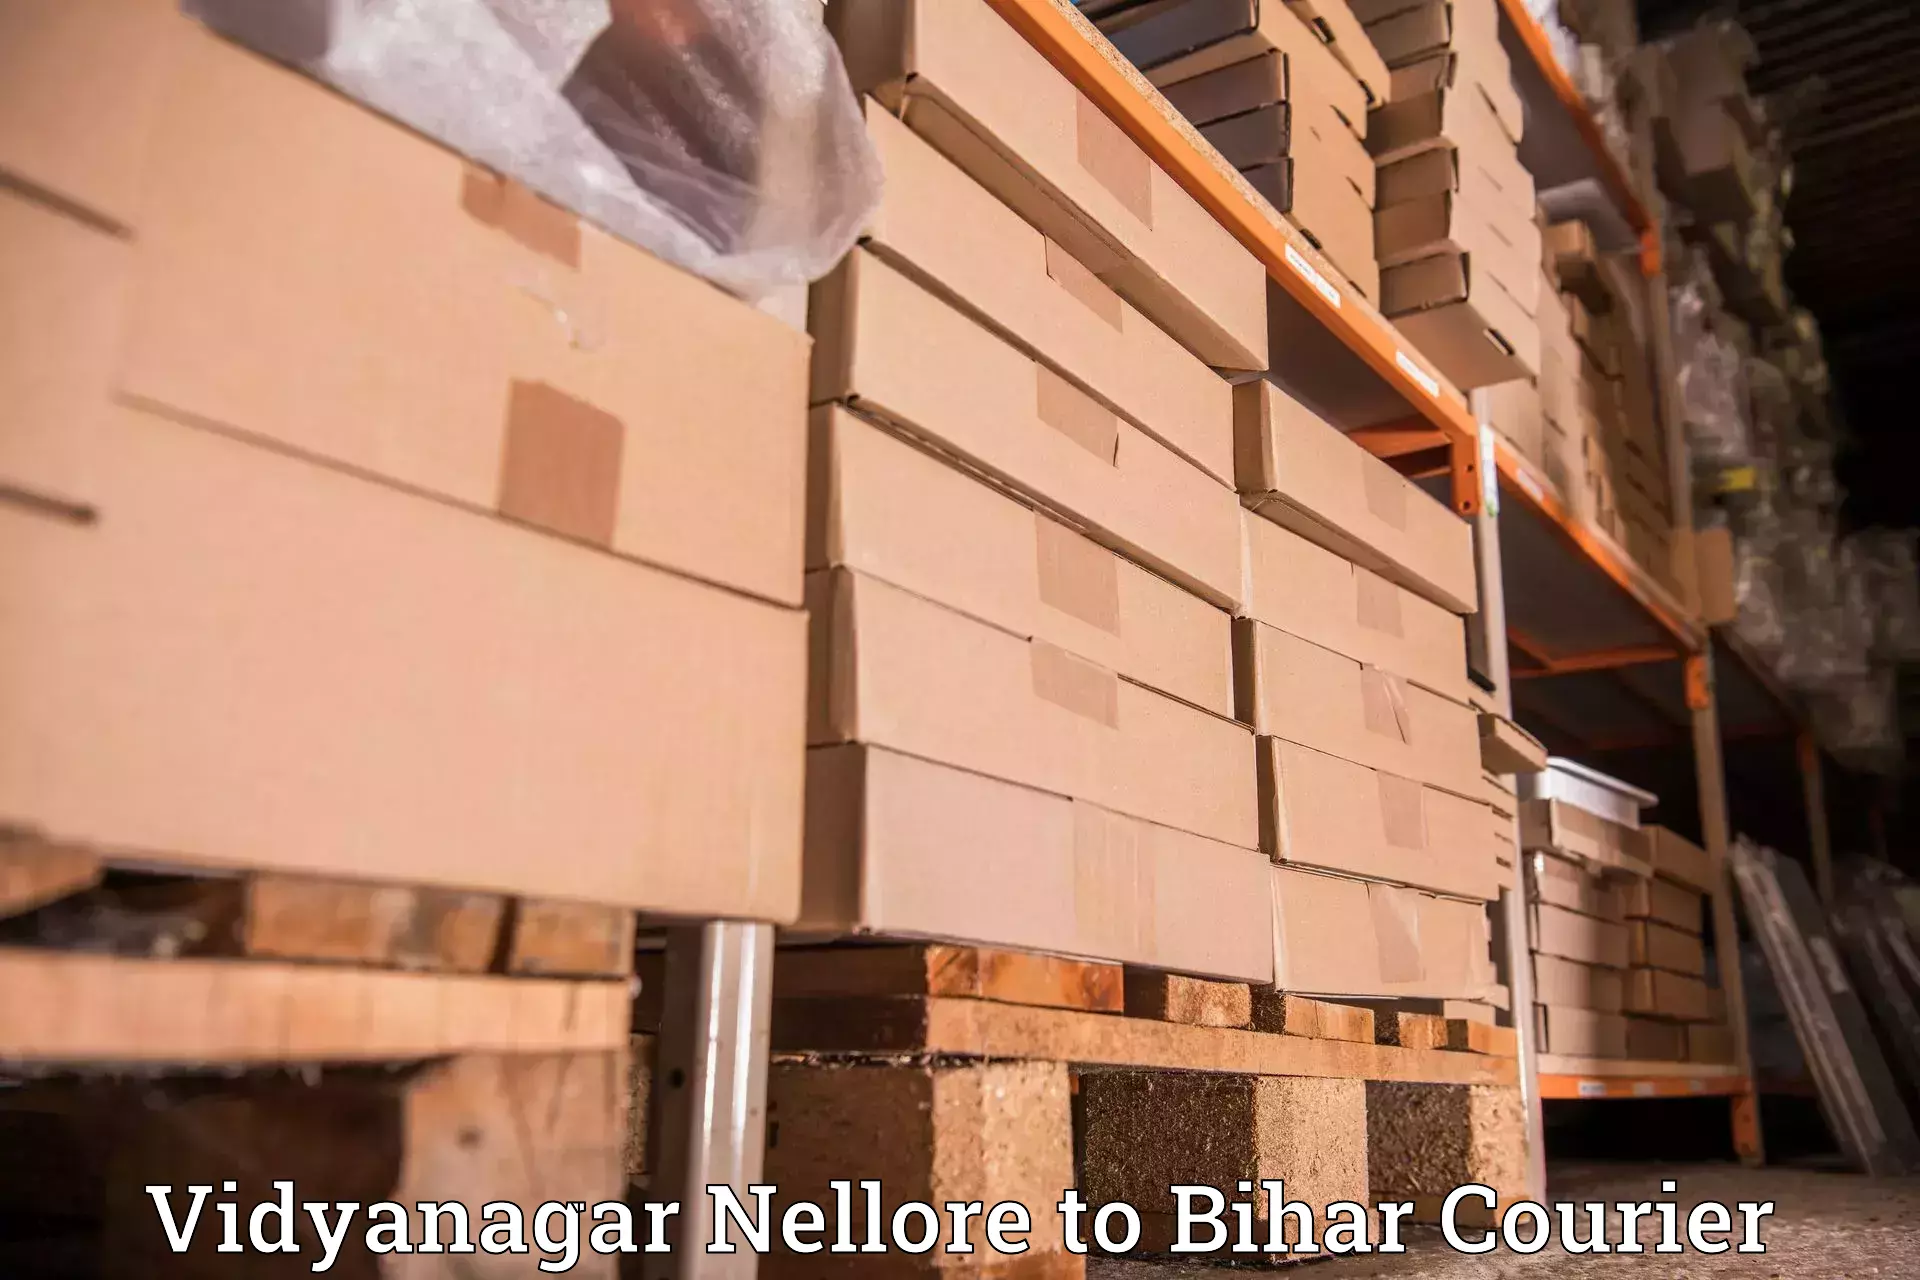 Advanced delivery solutions Vidyanagar Nellore to Bihar